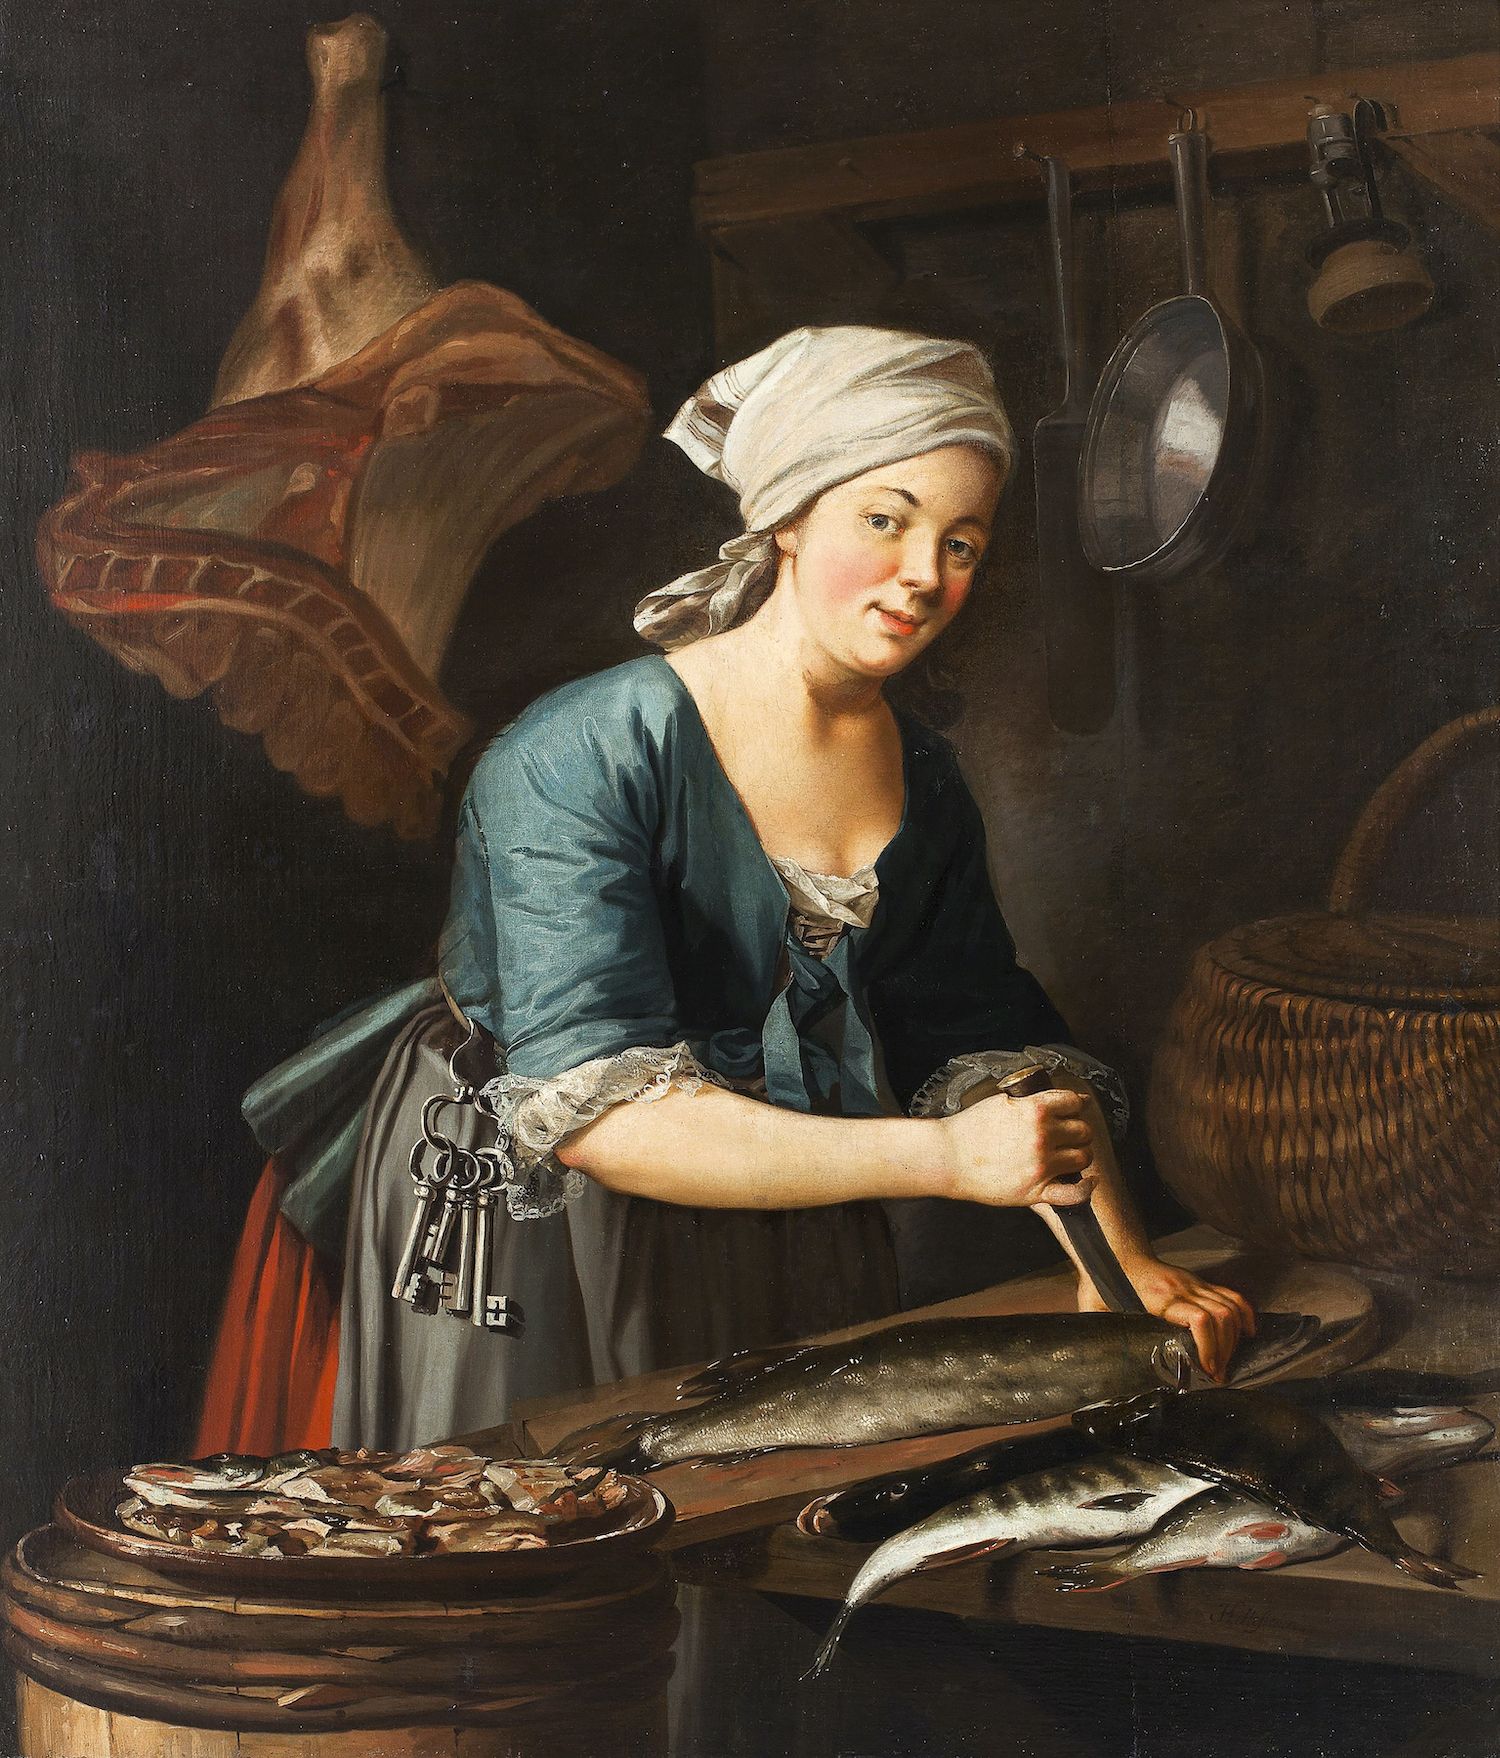 Kvinna på 1700-talet rensar fisk.